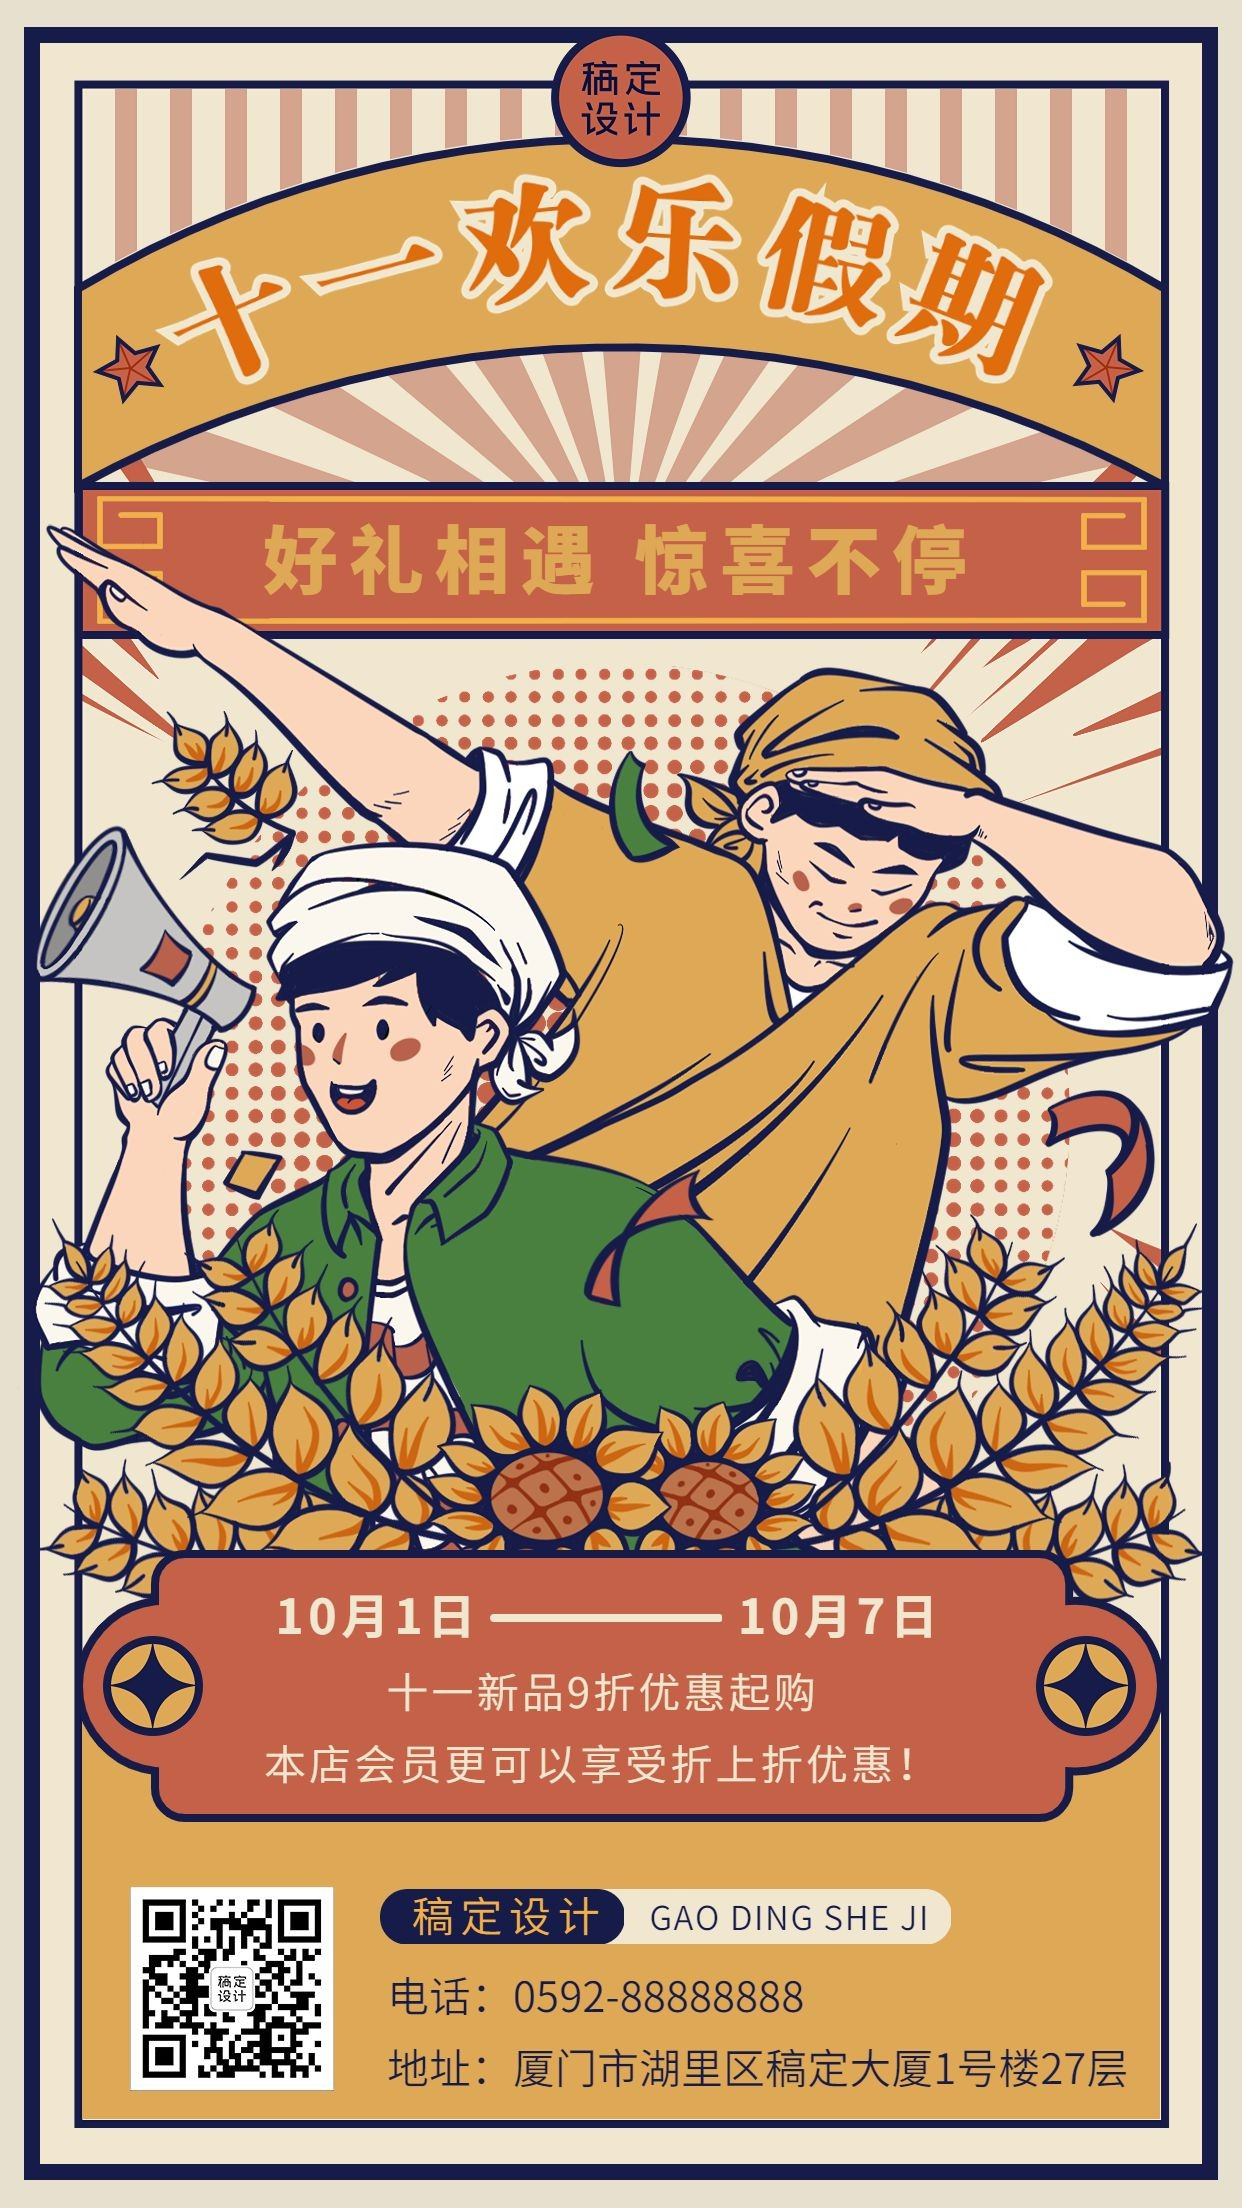 十一黄金周国庆节日营销折扣插画手机海报